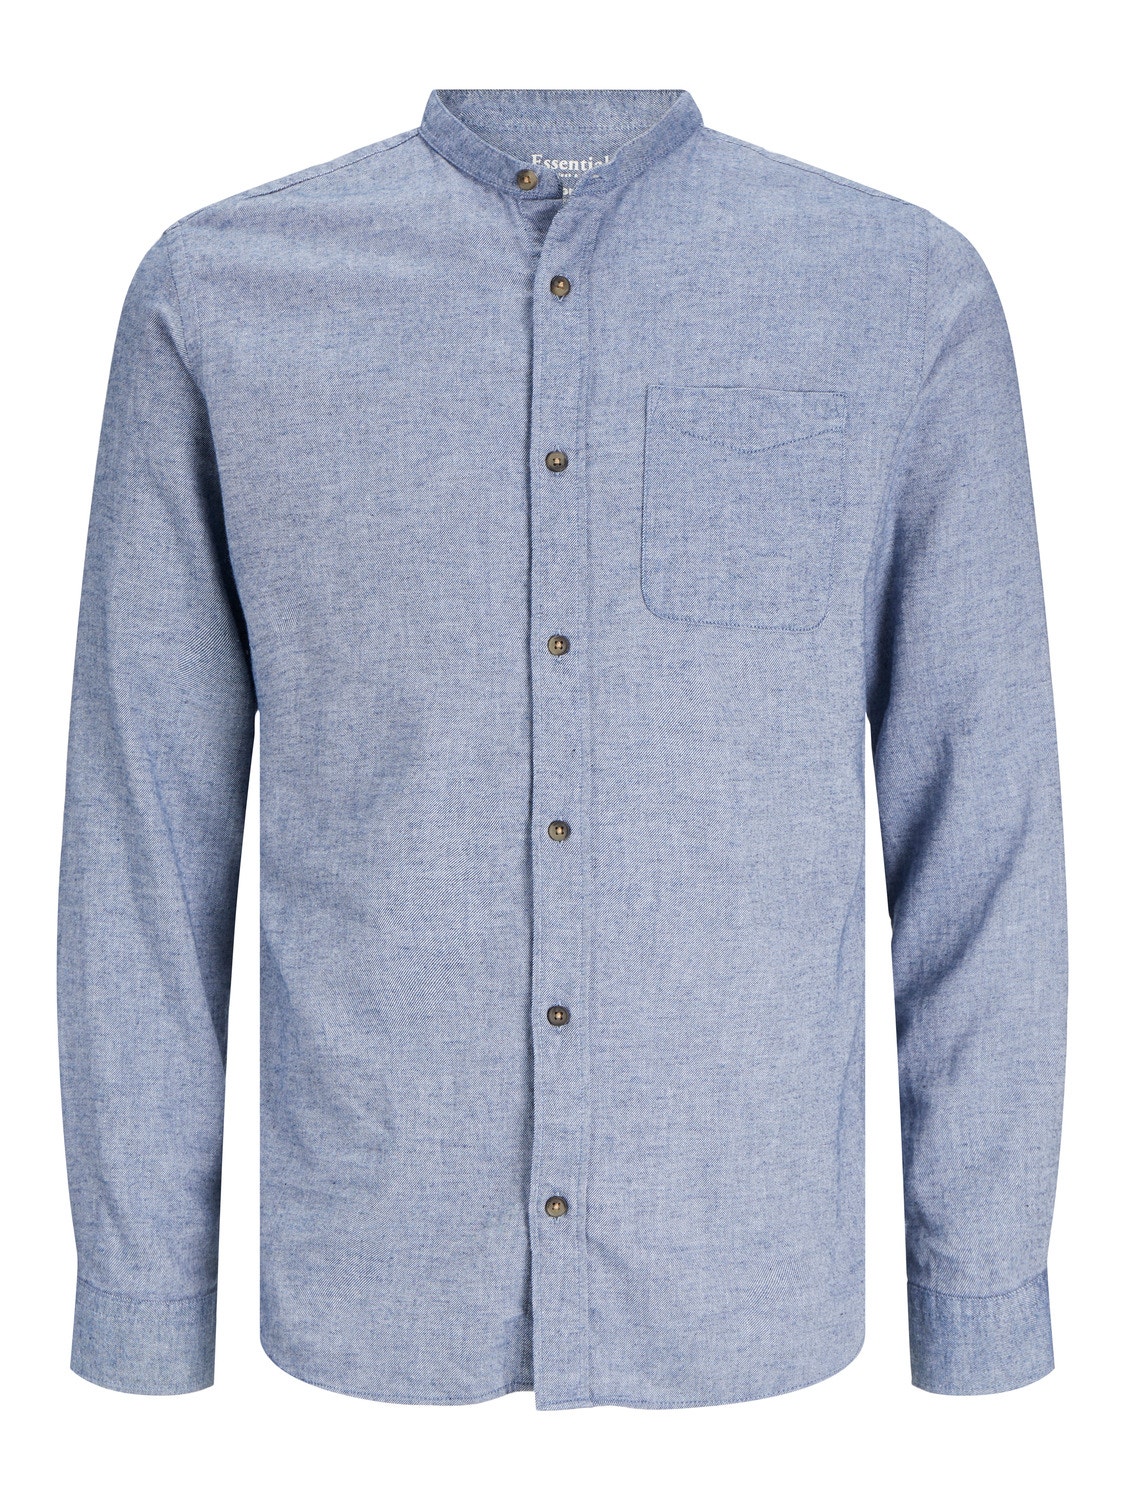 Jack & Jones Comfort Fit Neformalus marškiniai -Faded Denim - 12235975